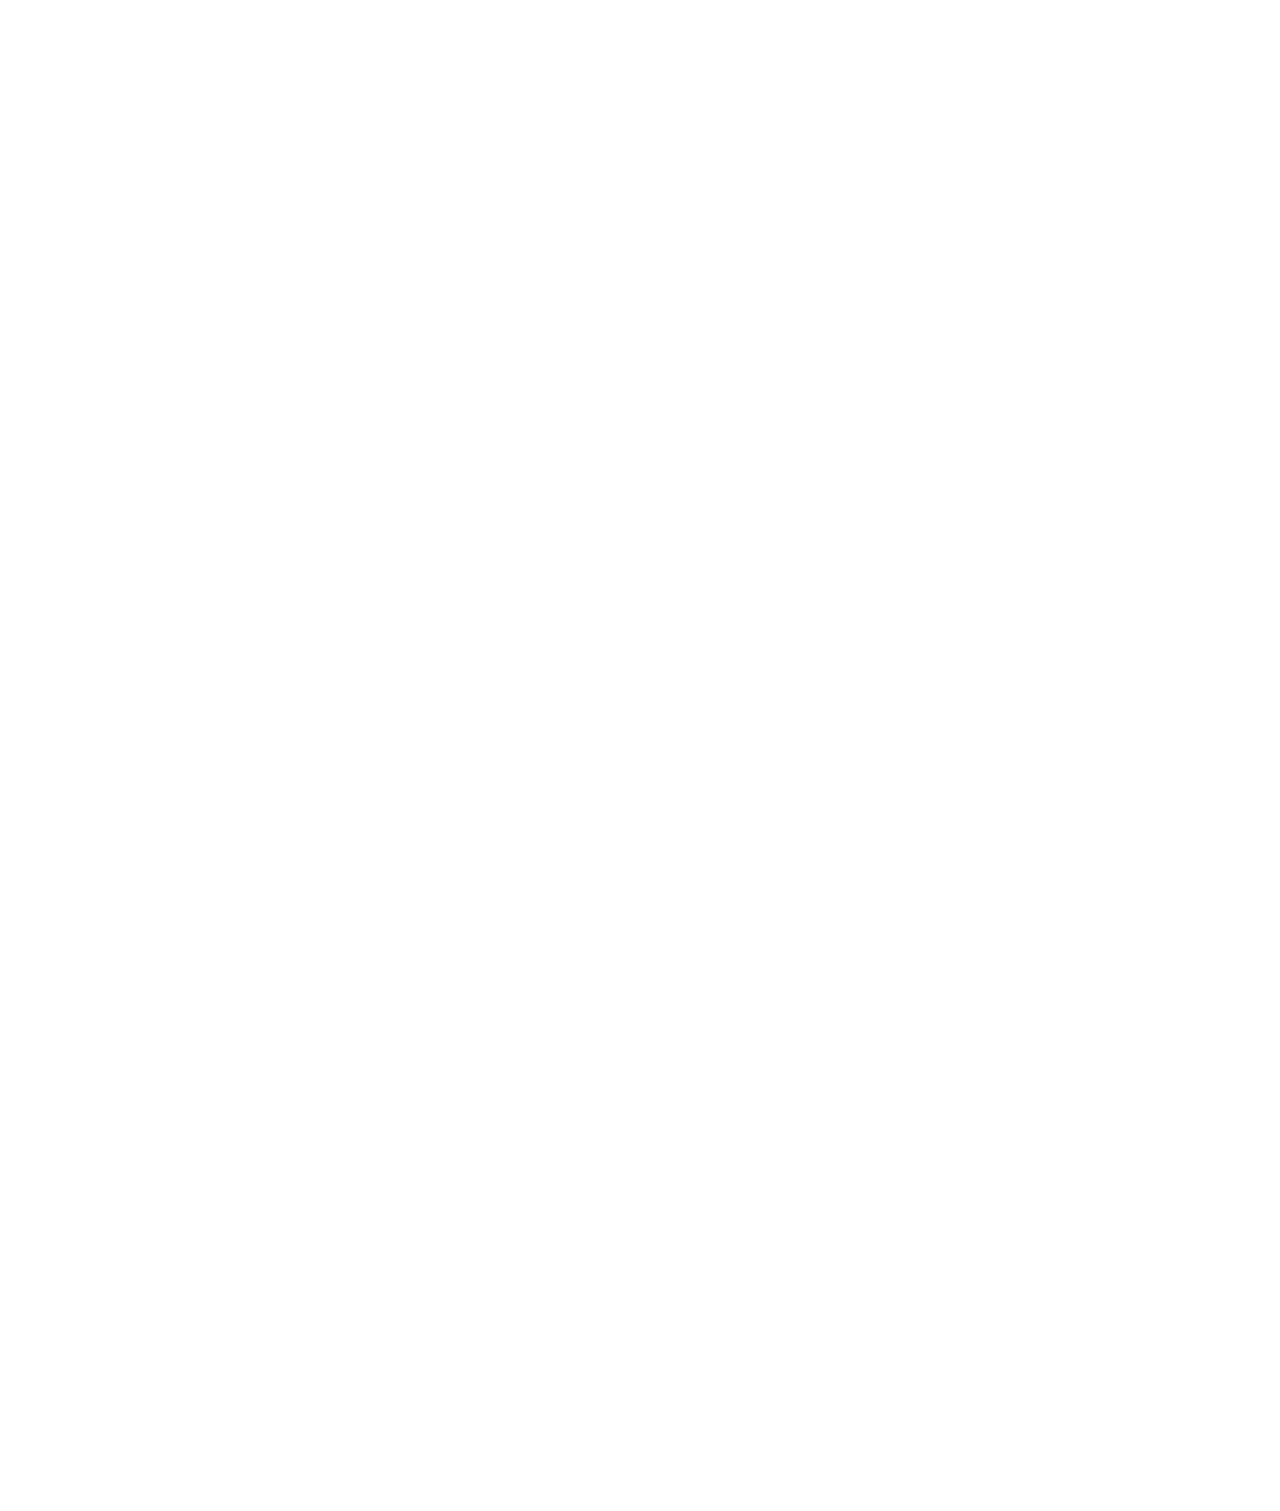 Ottilia's logo